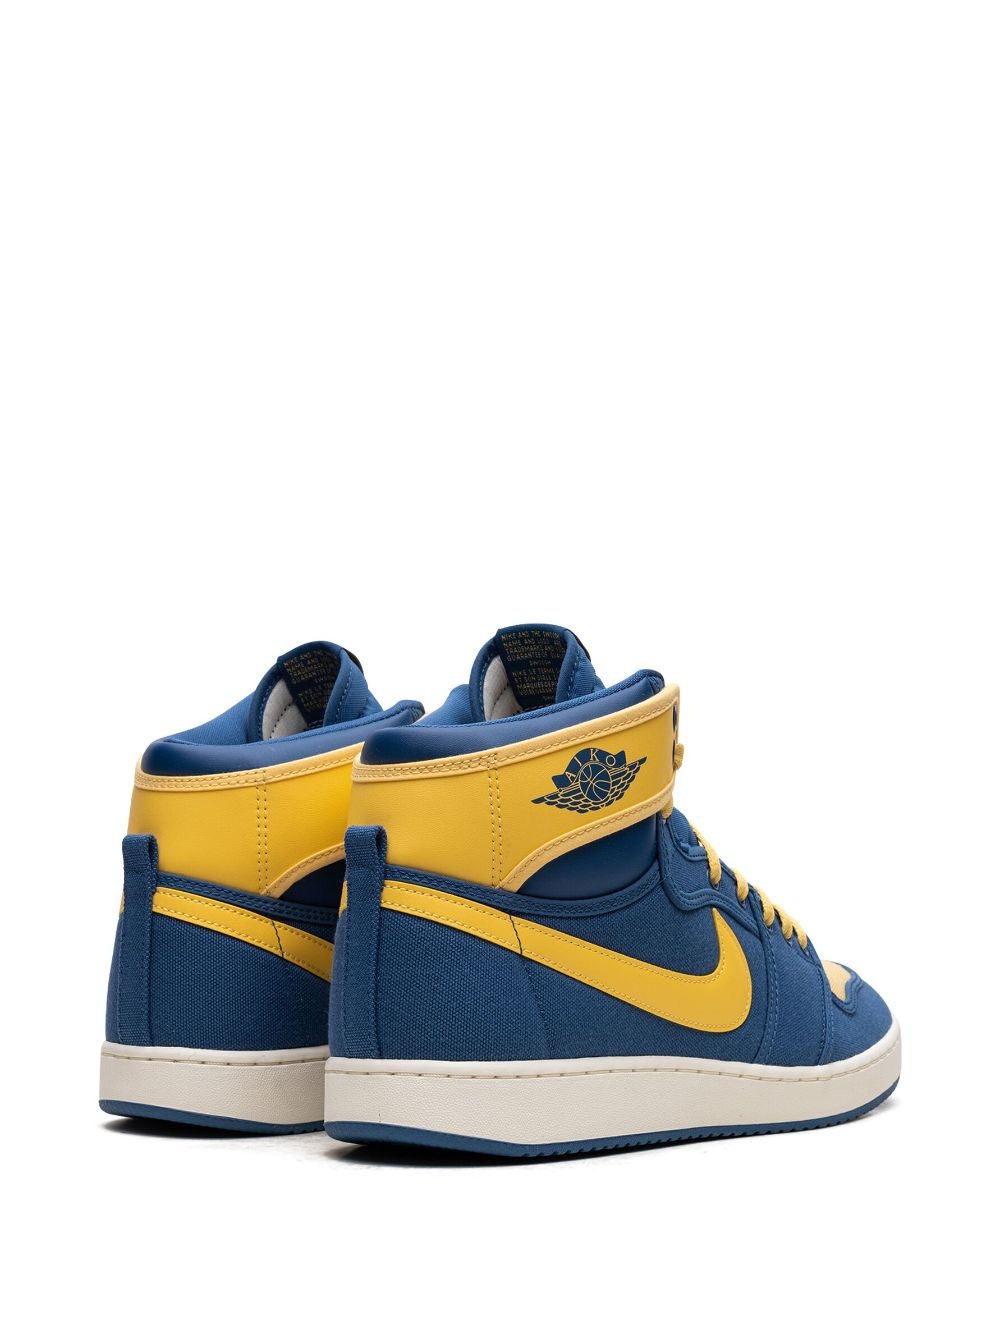 Air Jordan 1 KO "Laney" sneakers - 3